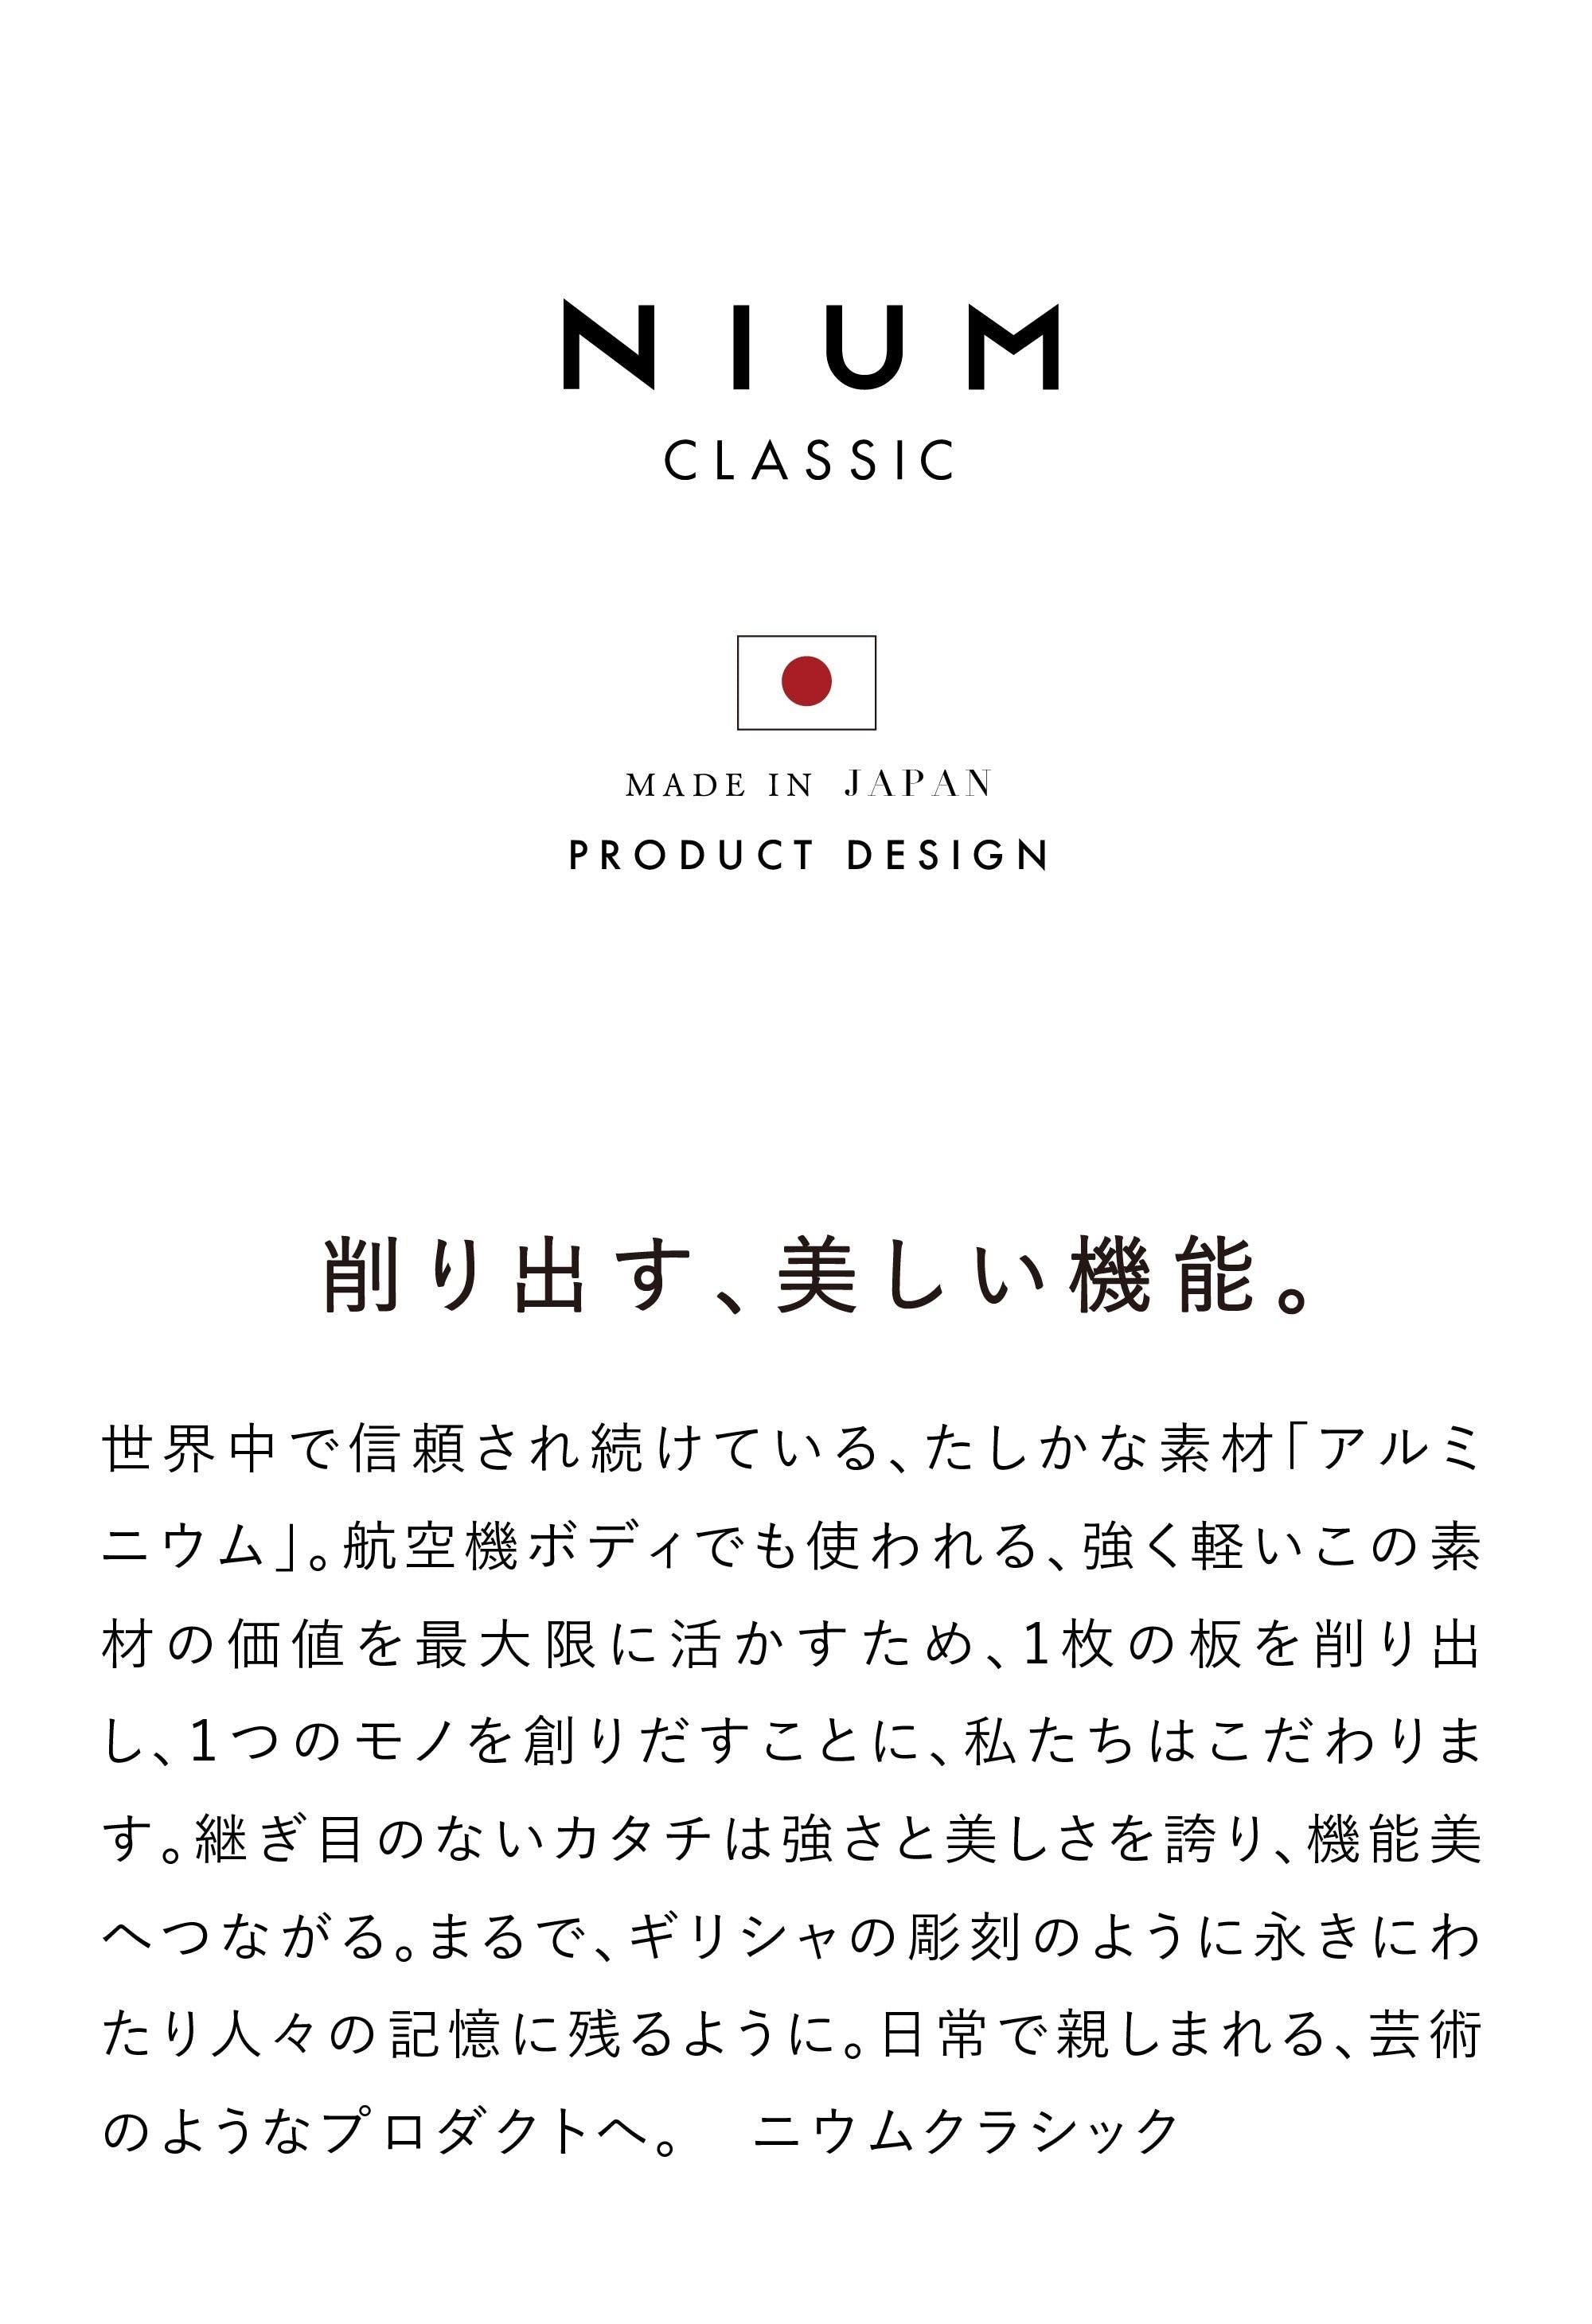 NIUM CLASSIC ニウムクラシック 次世代フレーム型 日本製 アルミ削り出し カードケース ジュラルミン ブランド説明